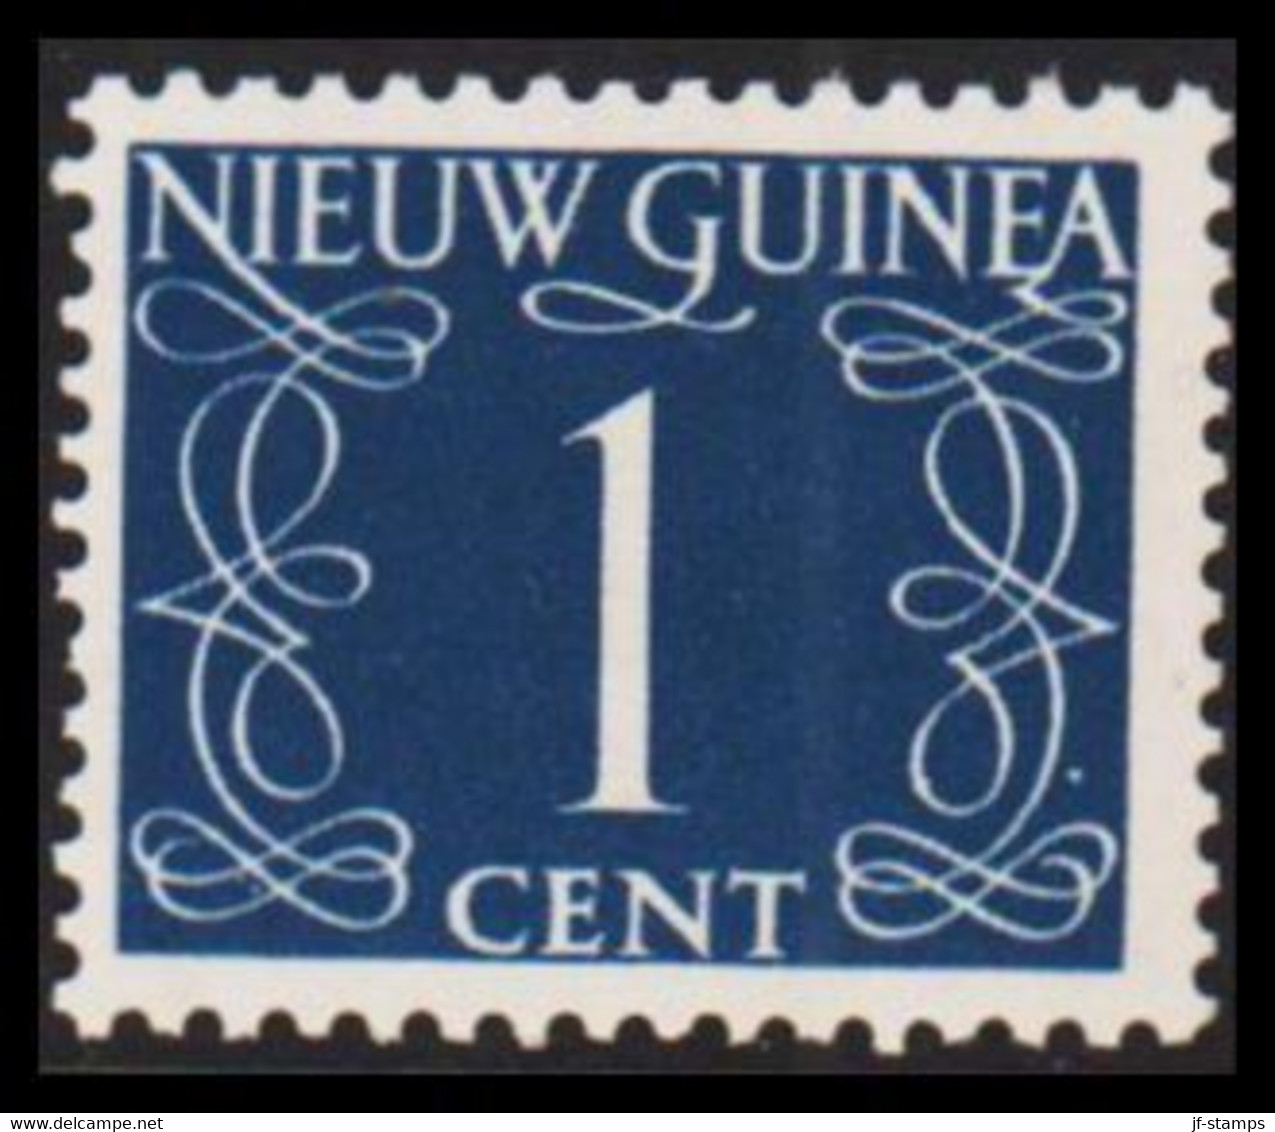 1950. NIEUW GUINEA. Nummerals- Type 1 CENT Hinged.  - JF529318 - Nouvelle Guinée Néerlandaise